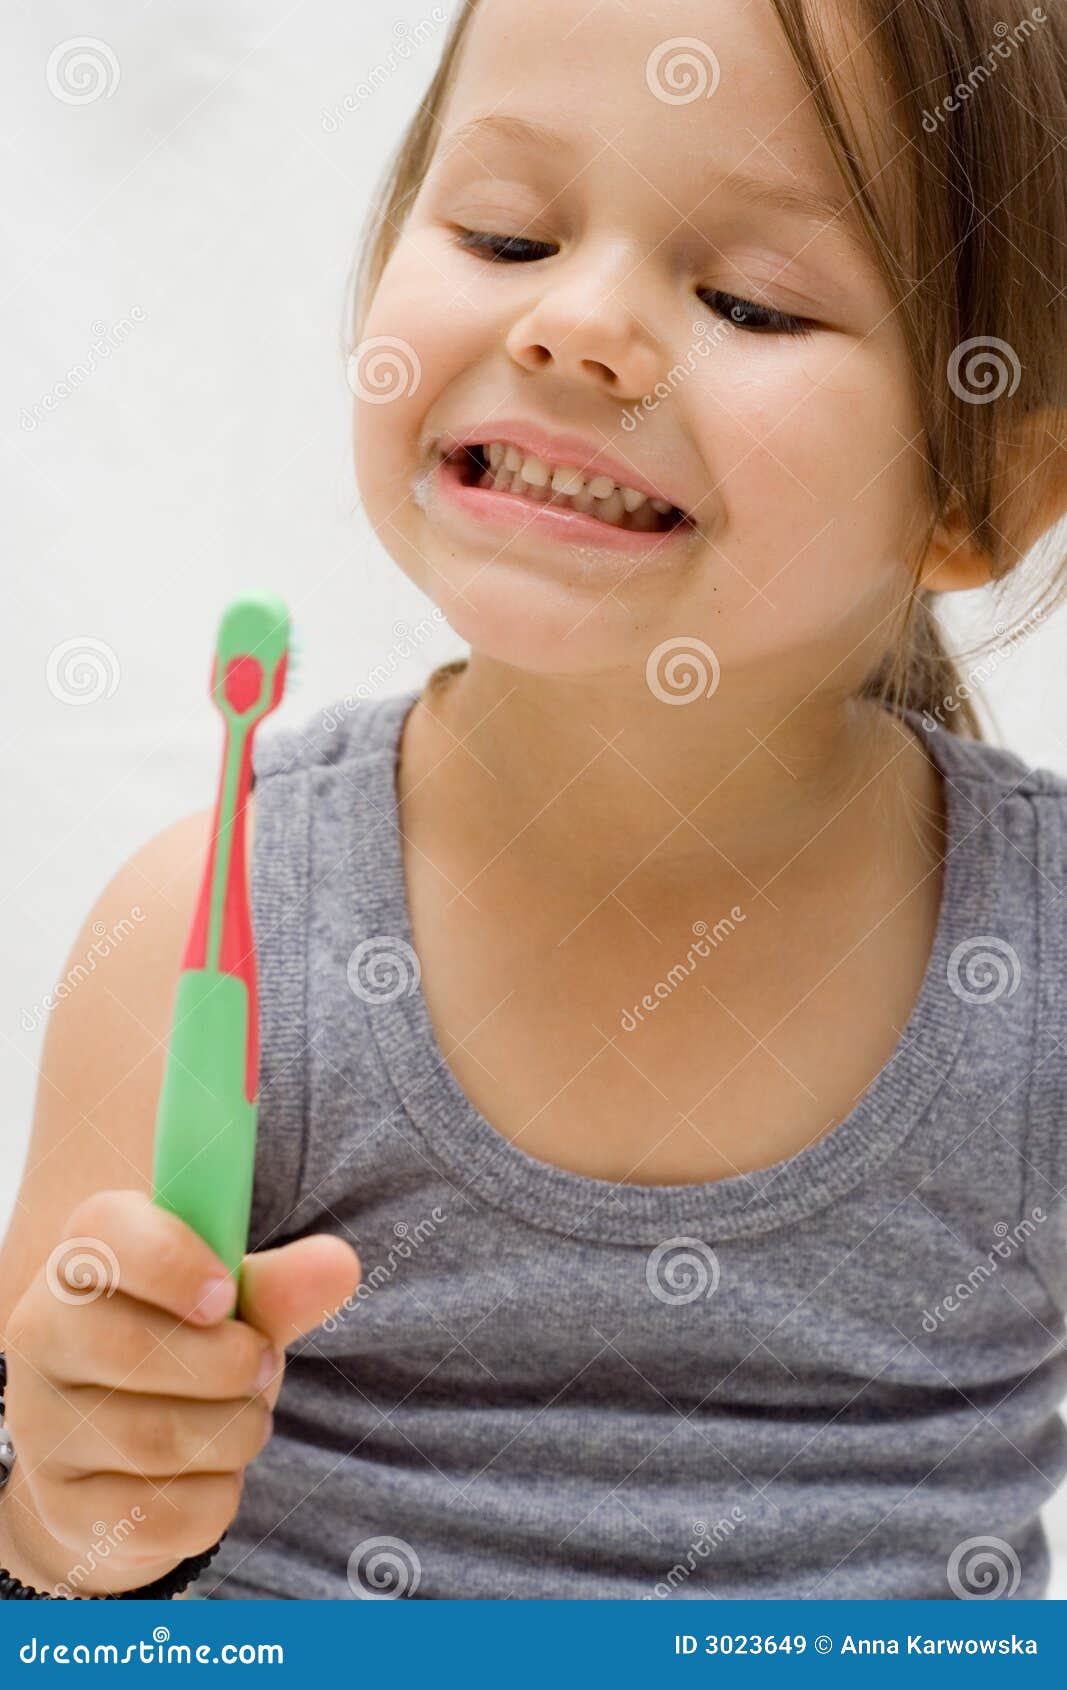 Teeth Brushing Stock Image Im